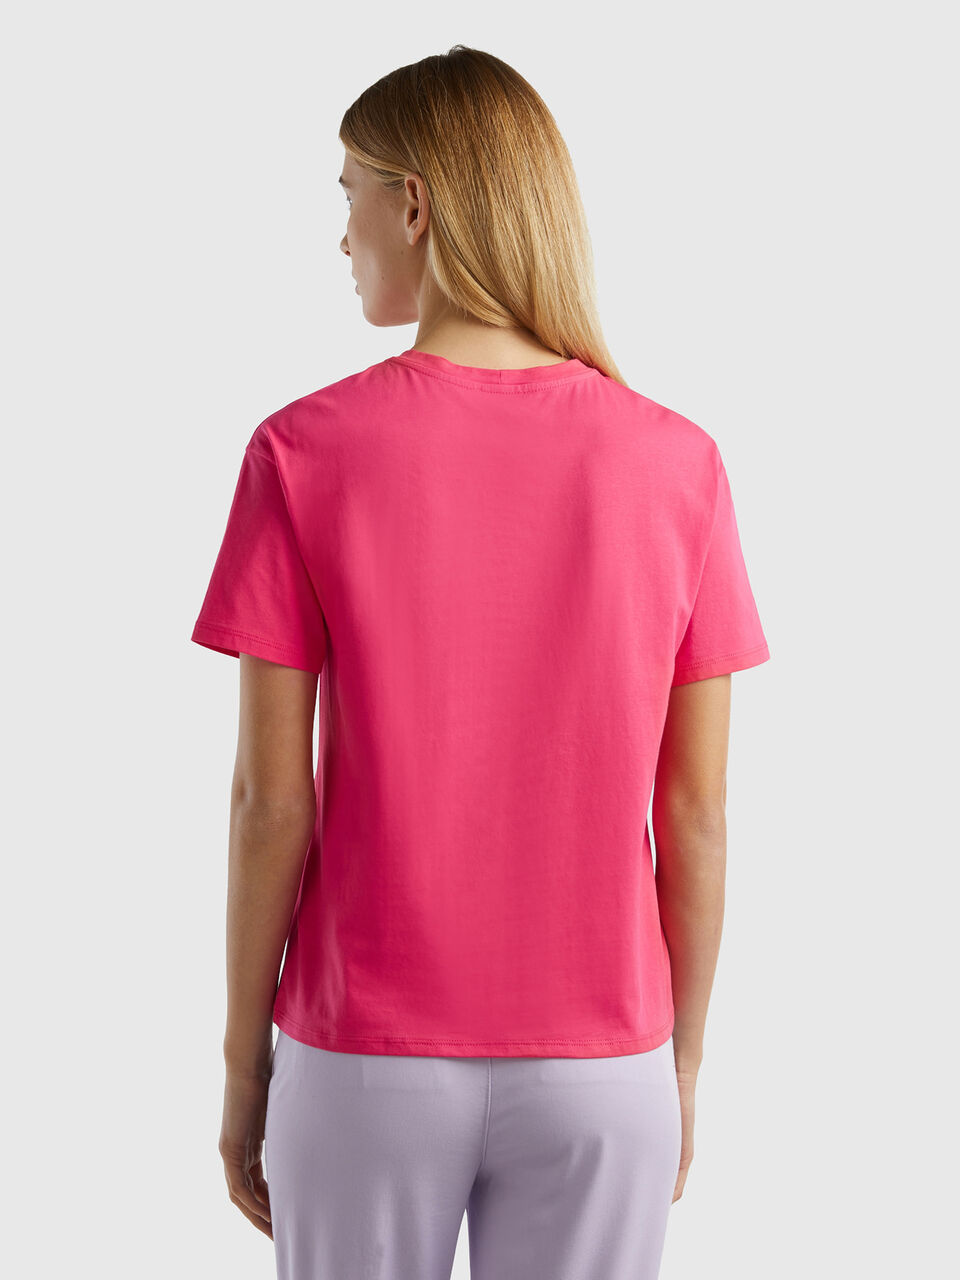 Short sleeve 100% - cotton | Fuchsia Benetton t-shirt